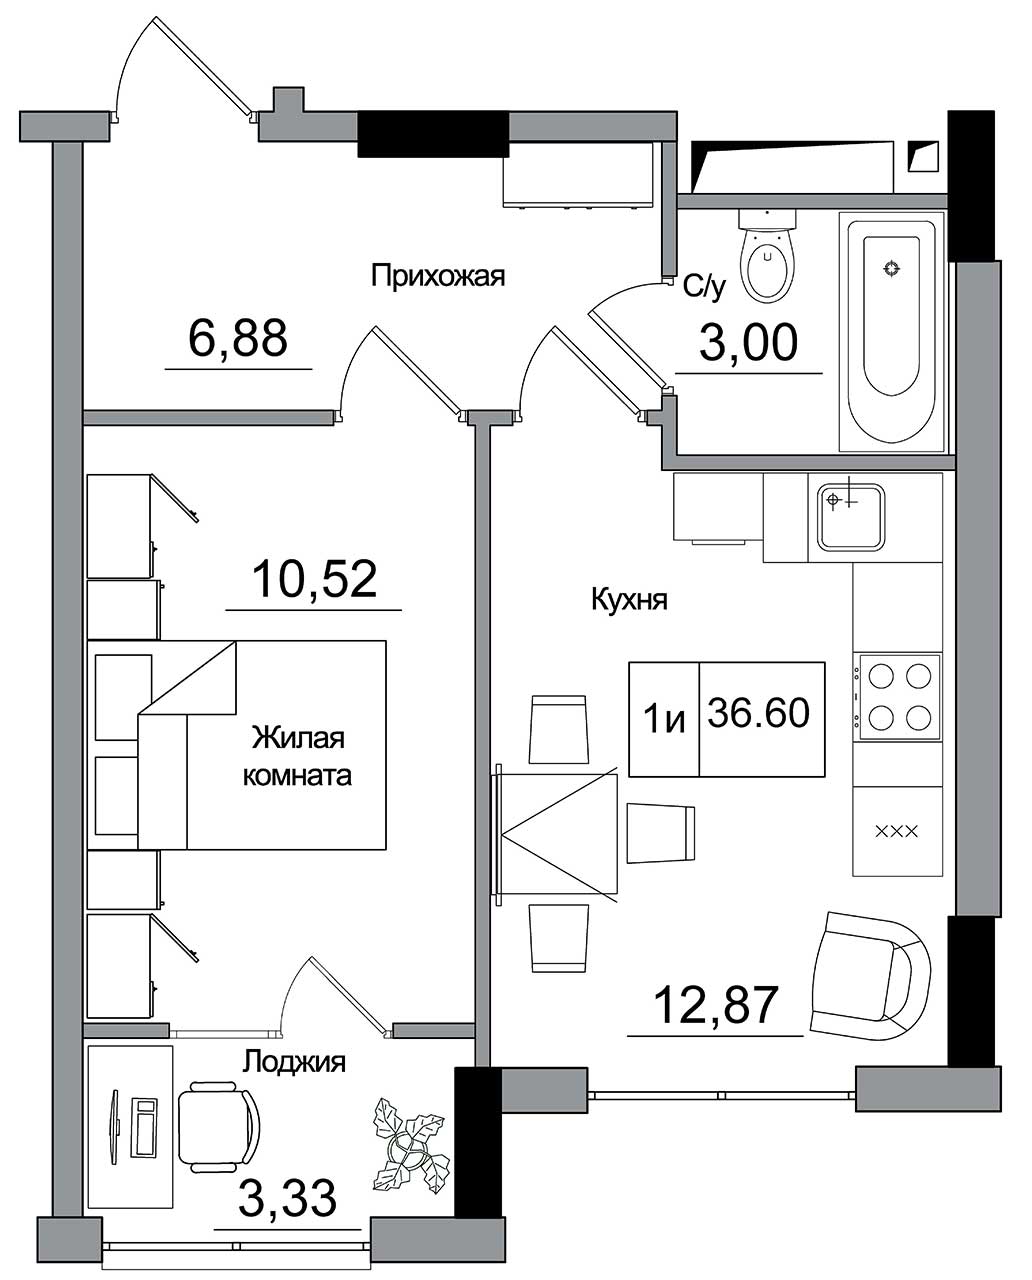 Планировка 1-к квартира площей 36.6м2, AB-16-08/00012.